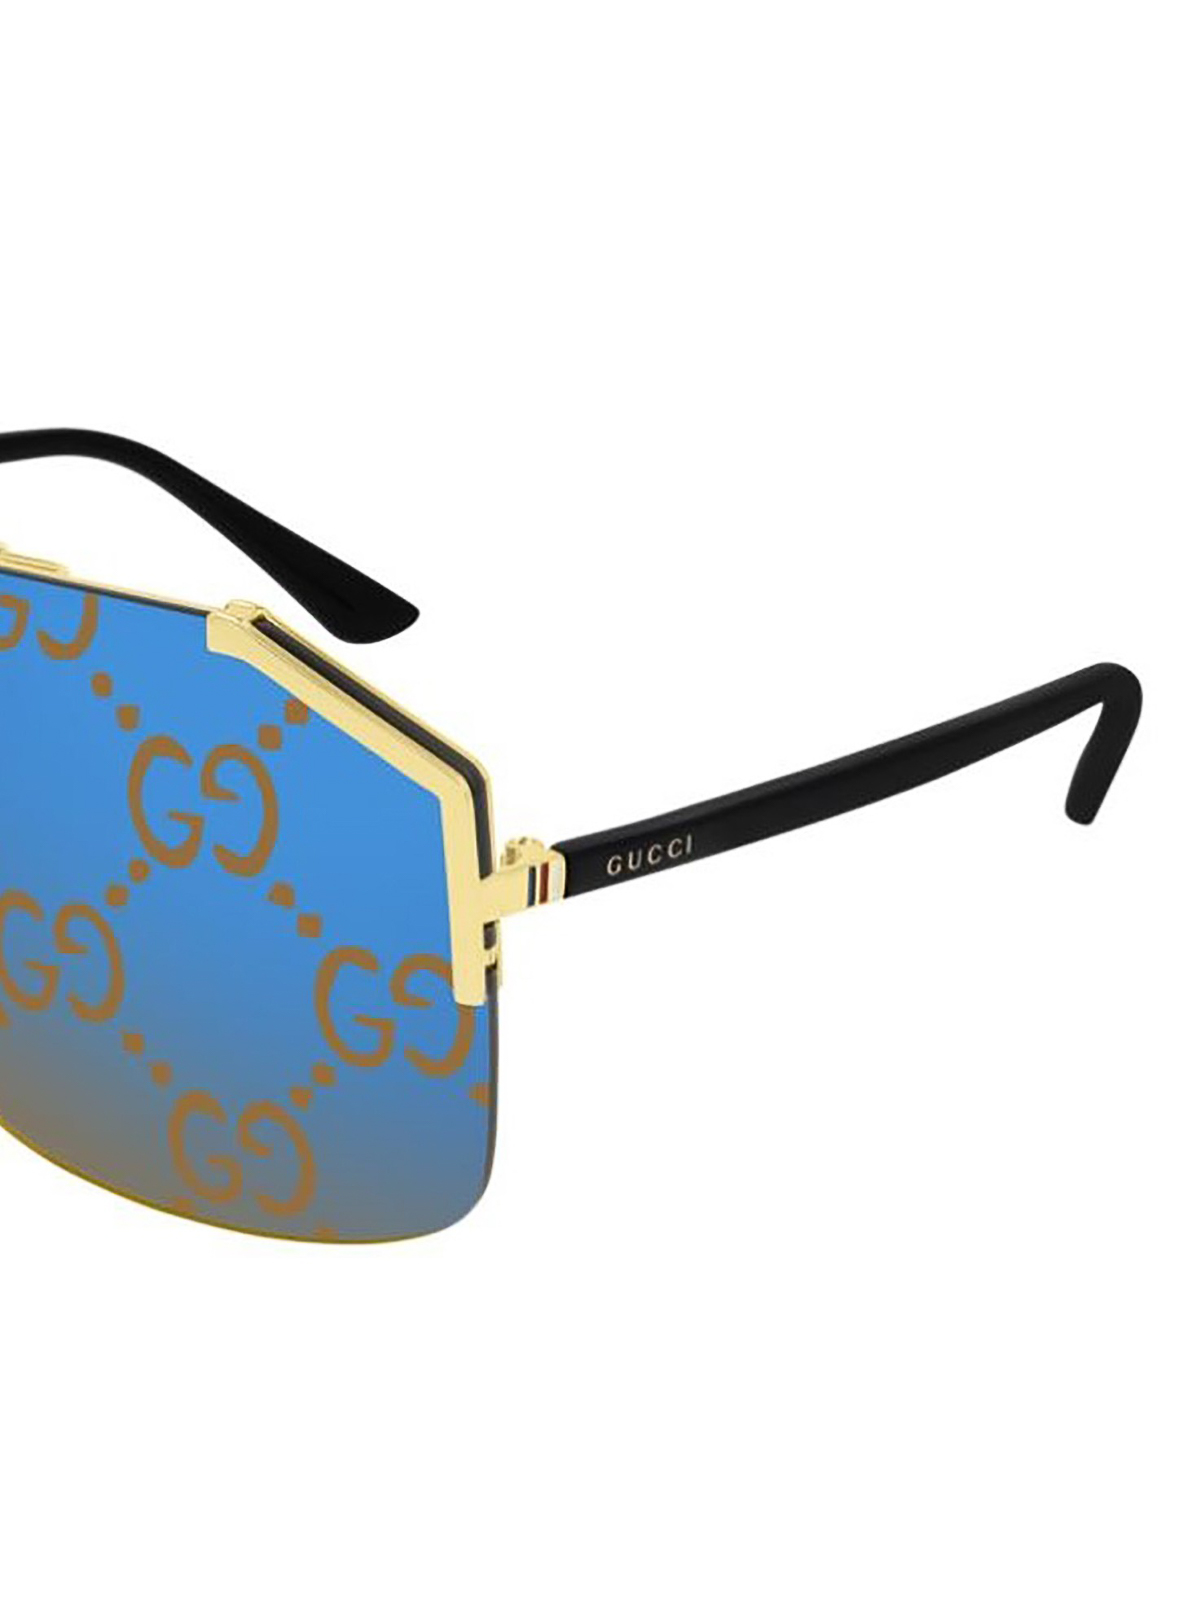 gucci sunglasses logo